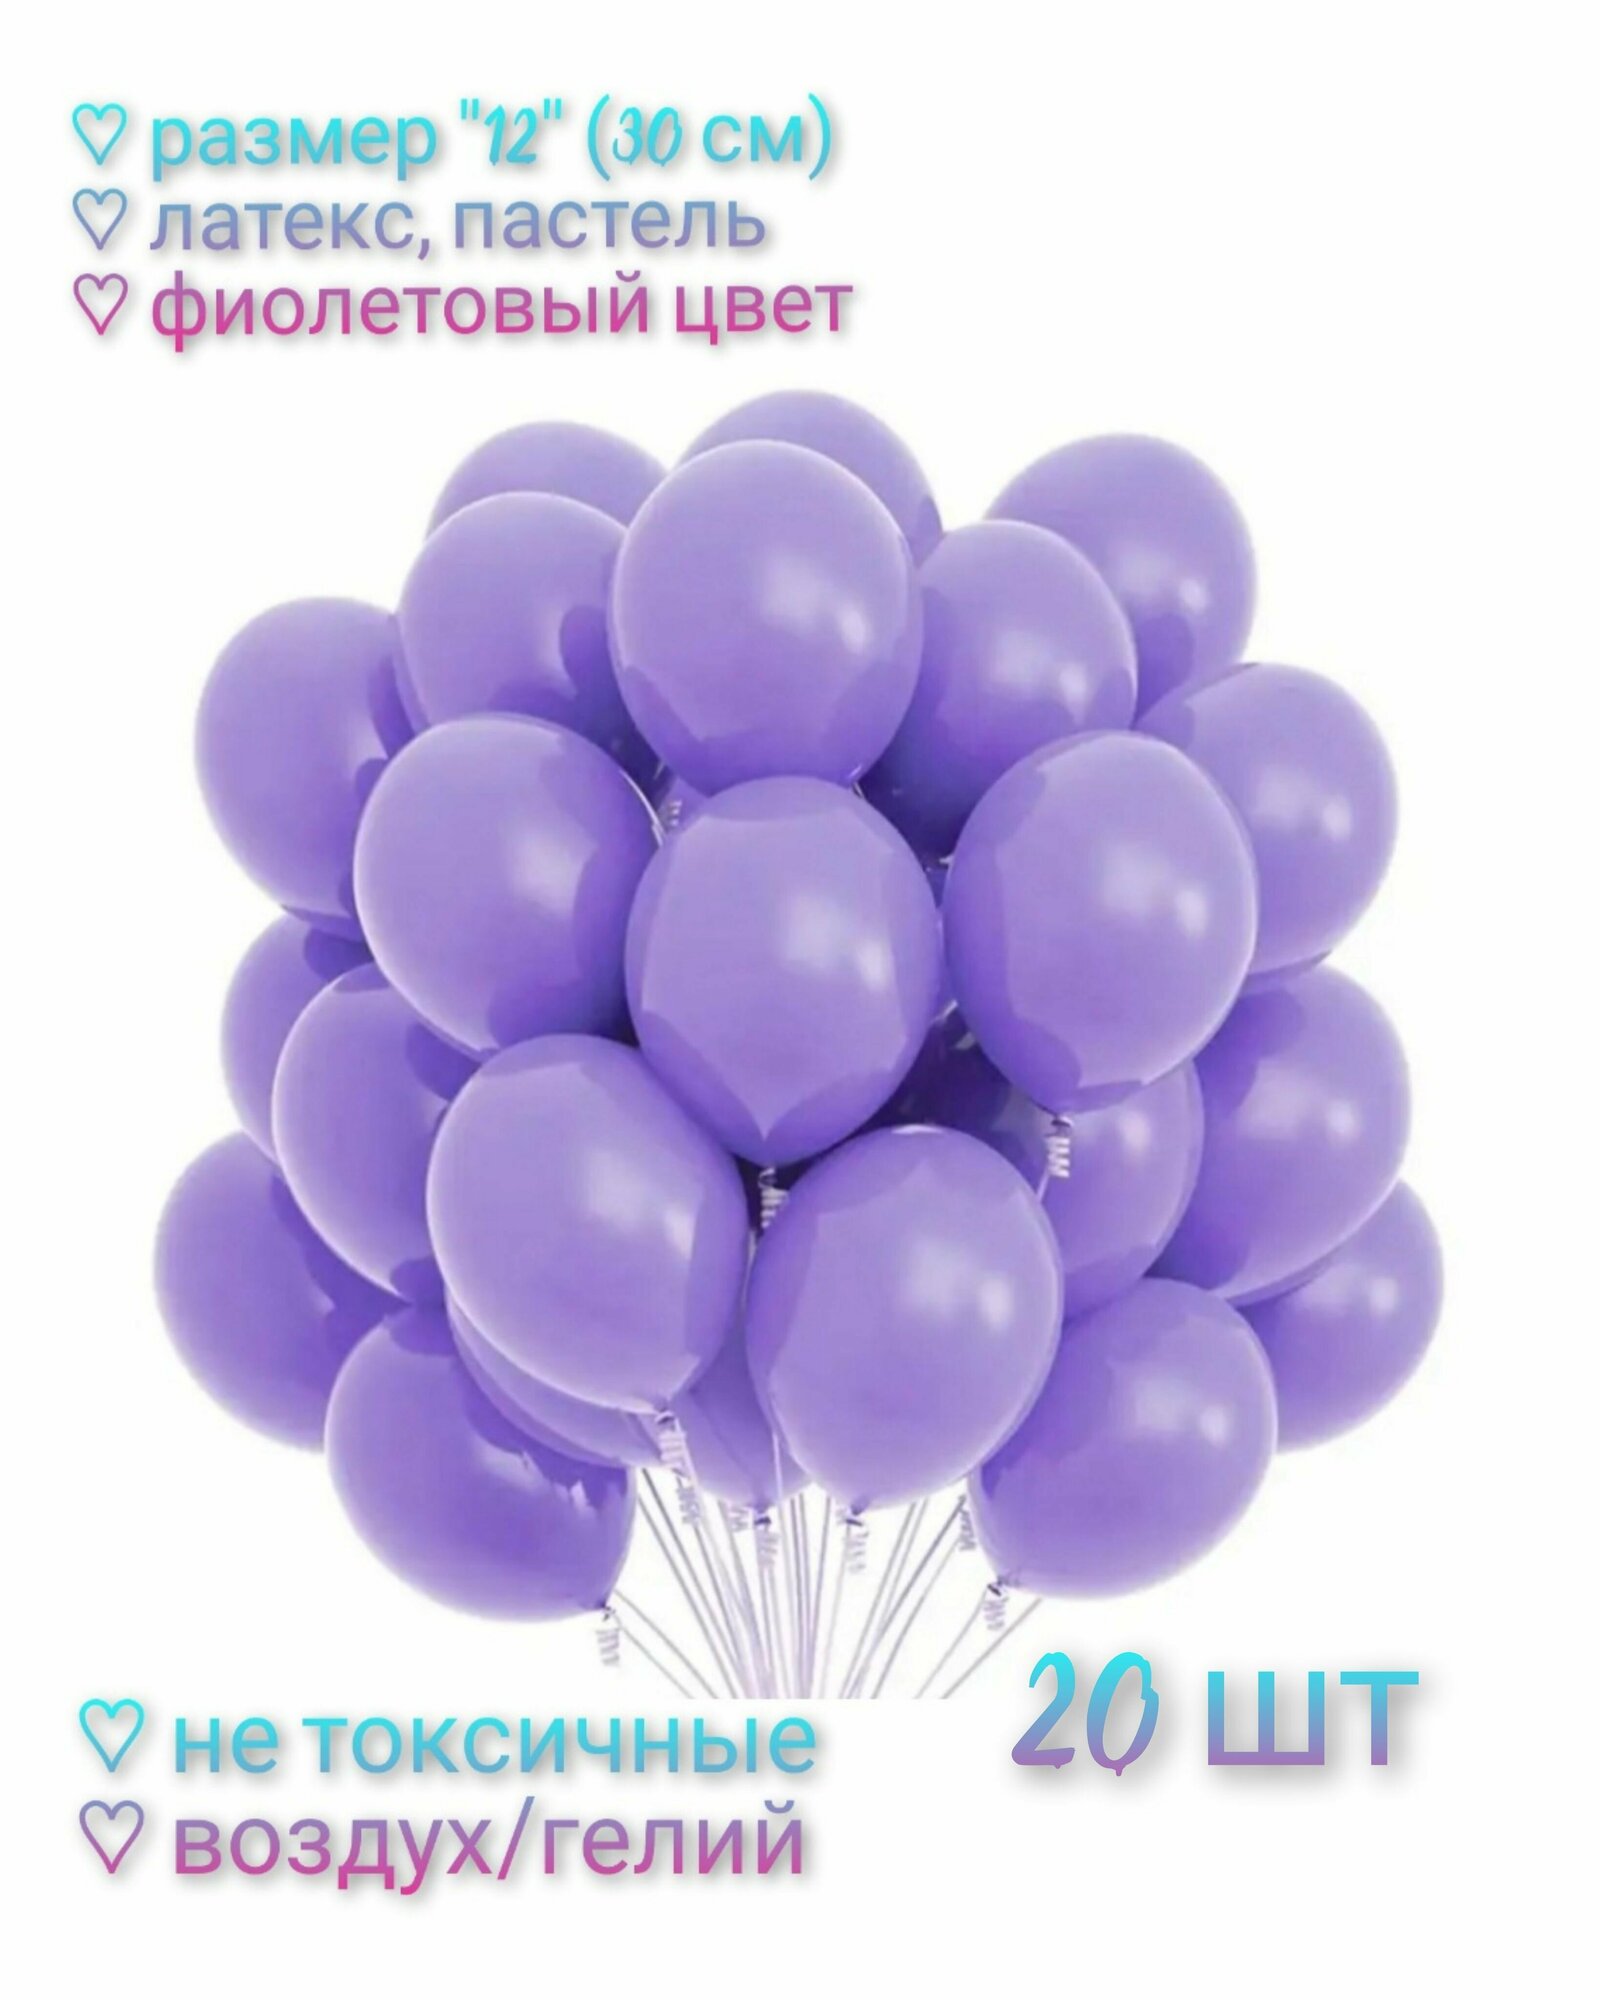 Набор Воздушных шаров "12" (30см) - 20 шт, латекс, пастель. Цвет фиолетовый